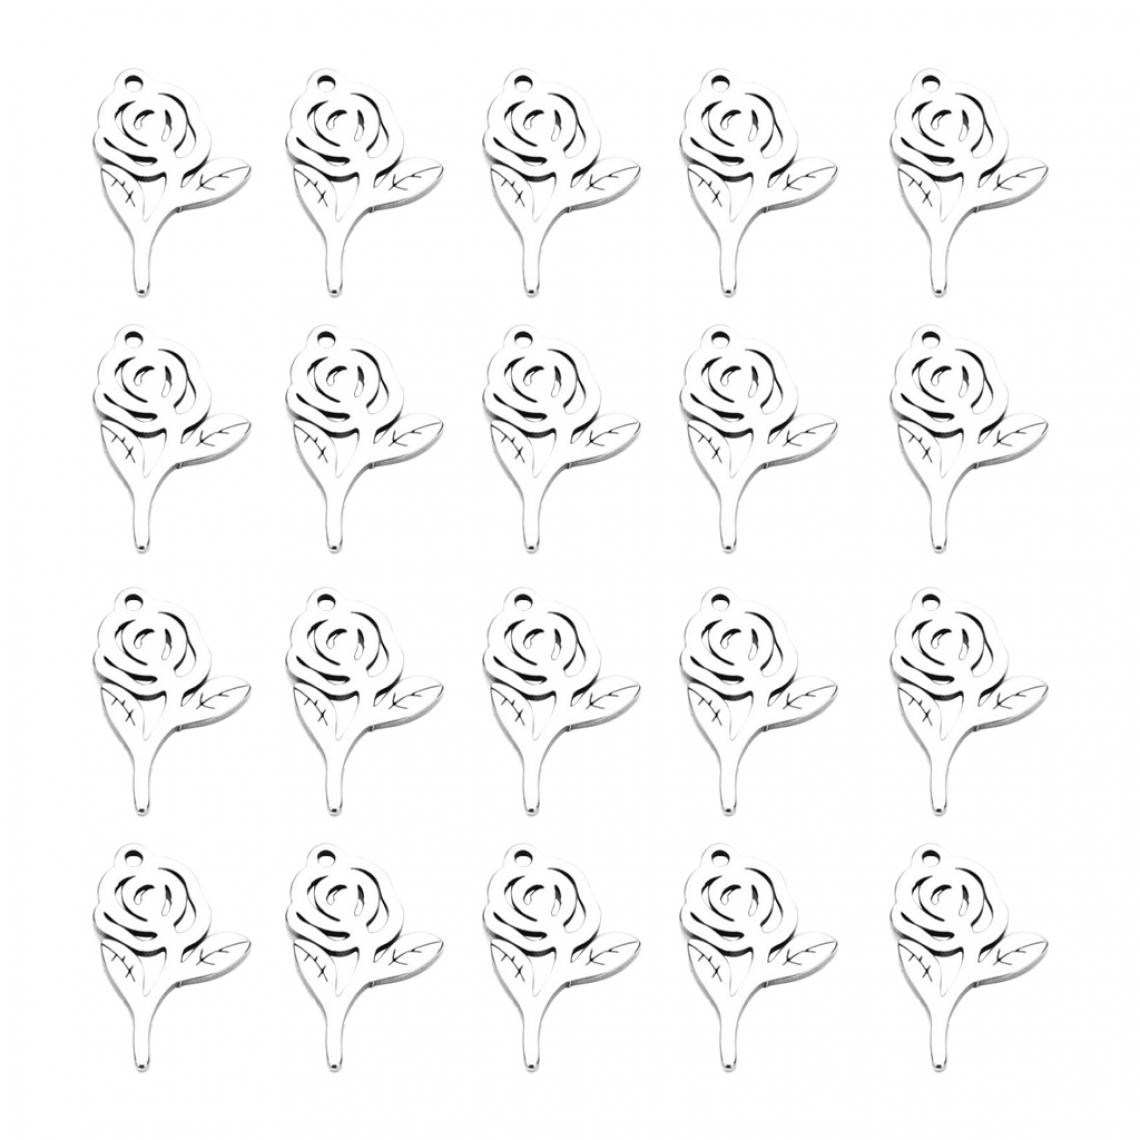 marque generique - Prettyia 20x Pendentifs En Métal Rose pour La Fabrication de Bijoux Bricolage Artisanat Boucle D'oreille Breloque - Perles